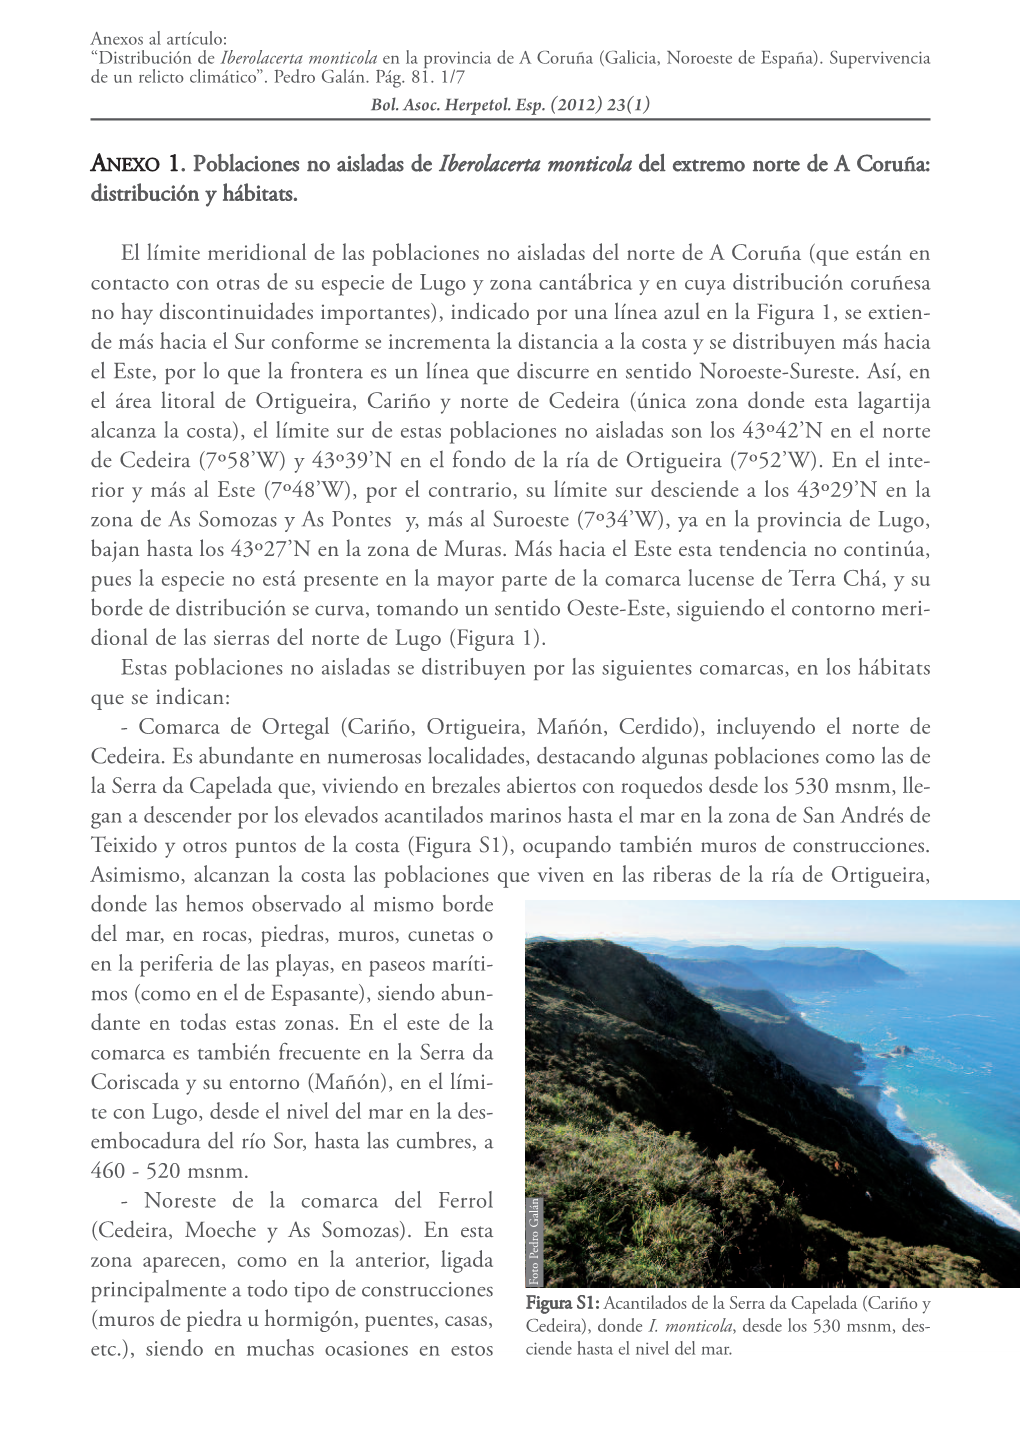 ANEXO 1. Poblaciones No Aisladas De Iberolacerta Monticola Del Extremo Norte De a Coruña: Distribución Y Hábitats